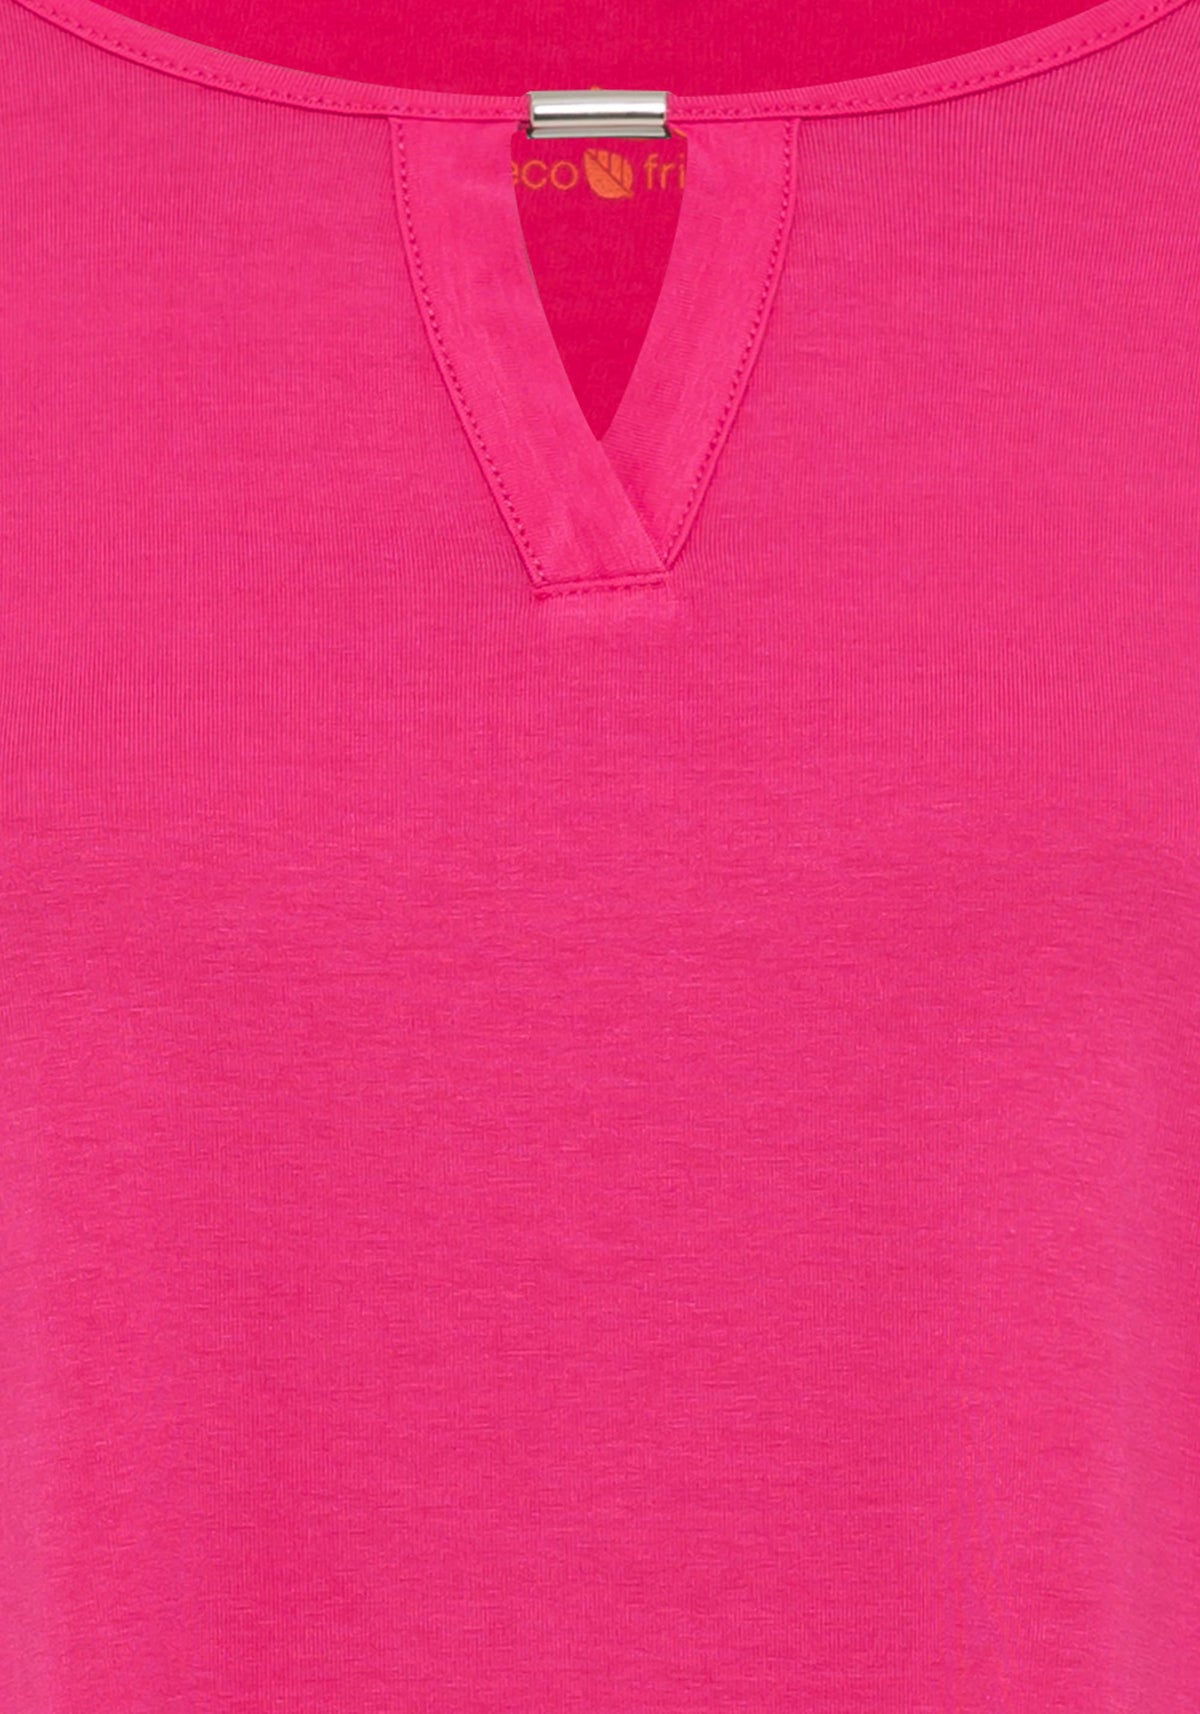 Short Sleeve Keyhole Neck T-Shirt containing LENZING™ ECOVERO™ Viscose